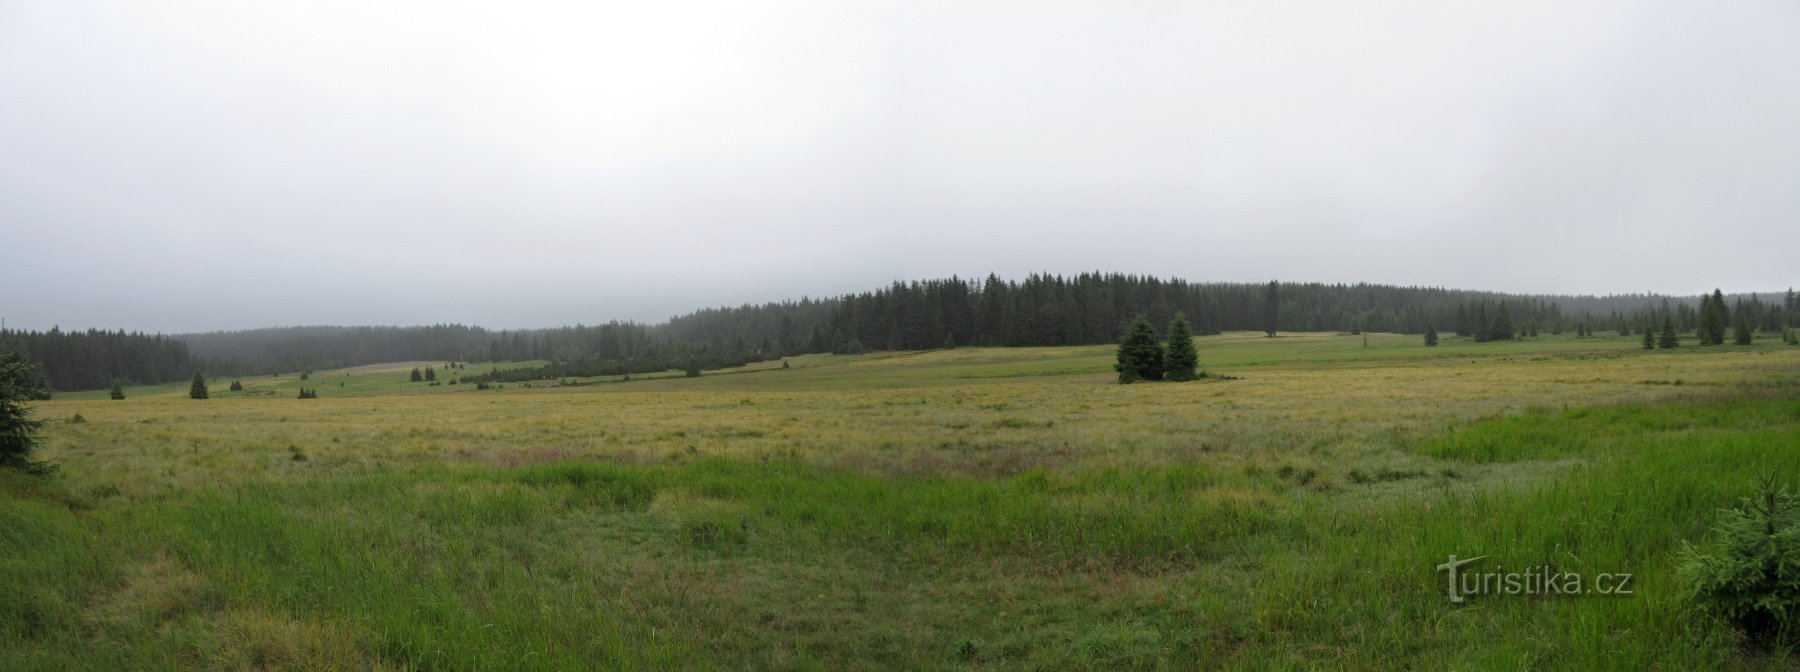 National nature reserve Rolavská vrchoviště